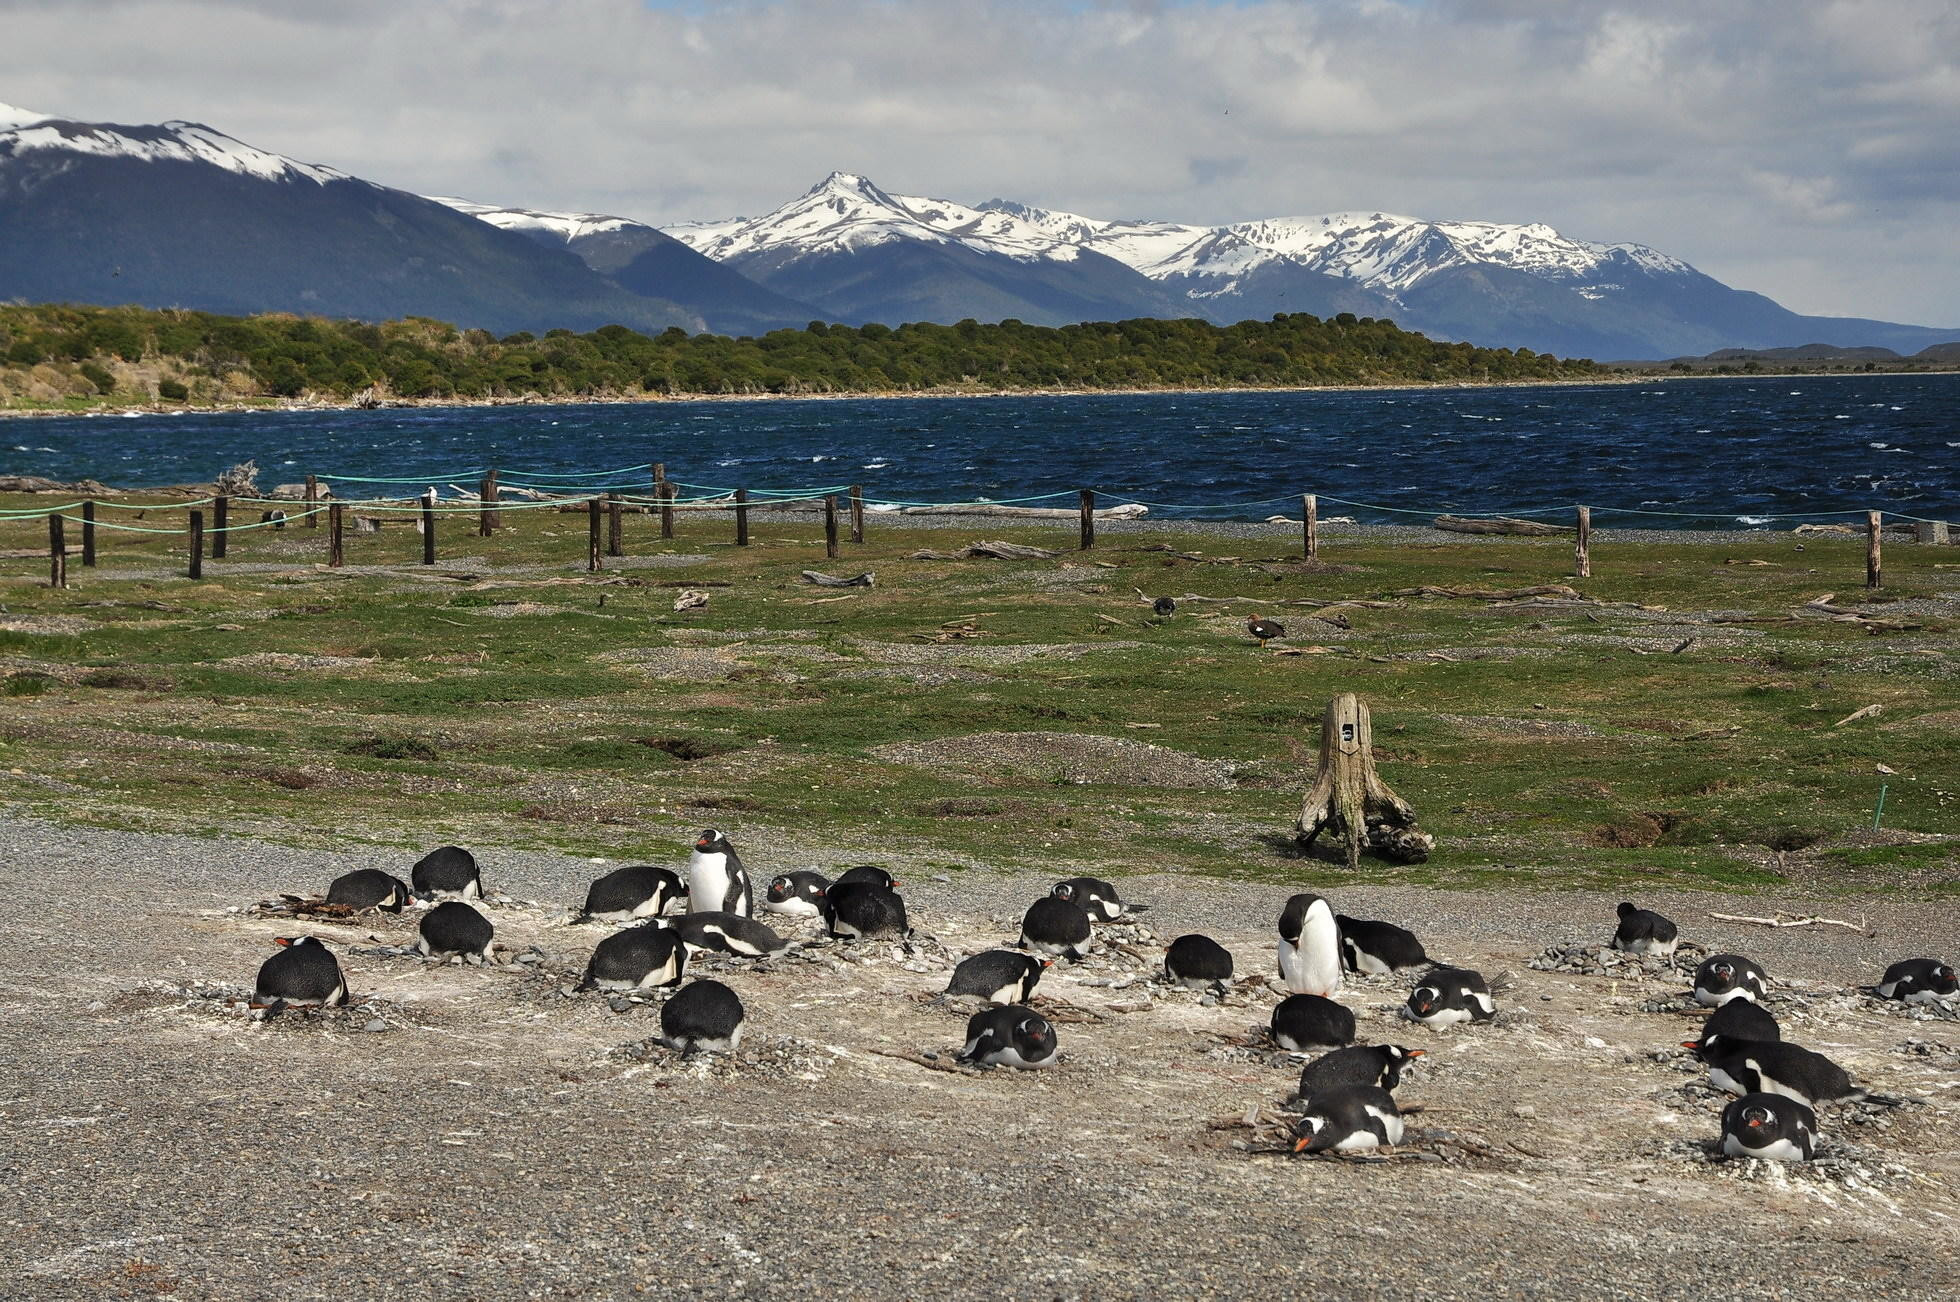 Skupina tučniakov na hniezdach, v pozadí hory patriace Čile